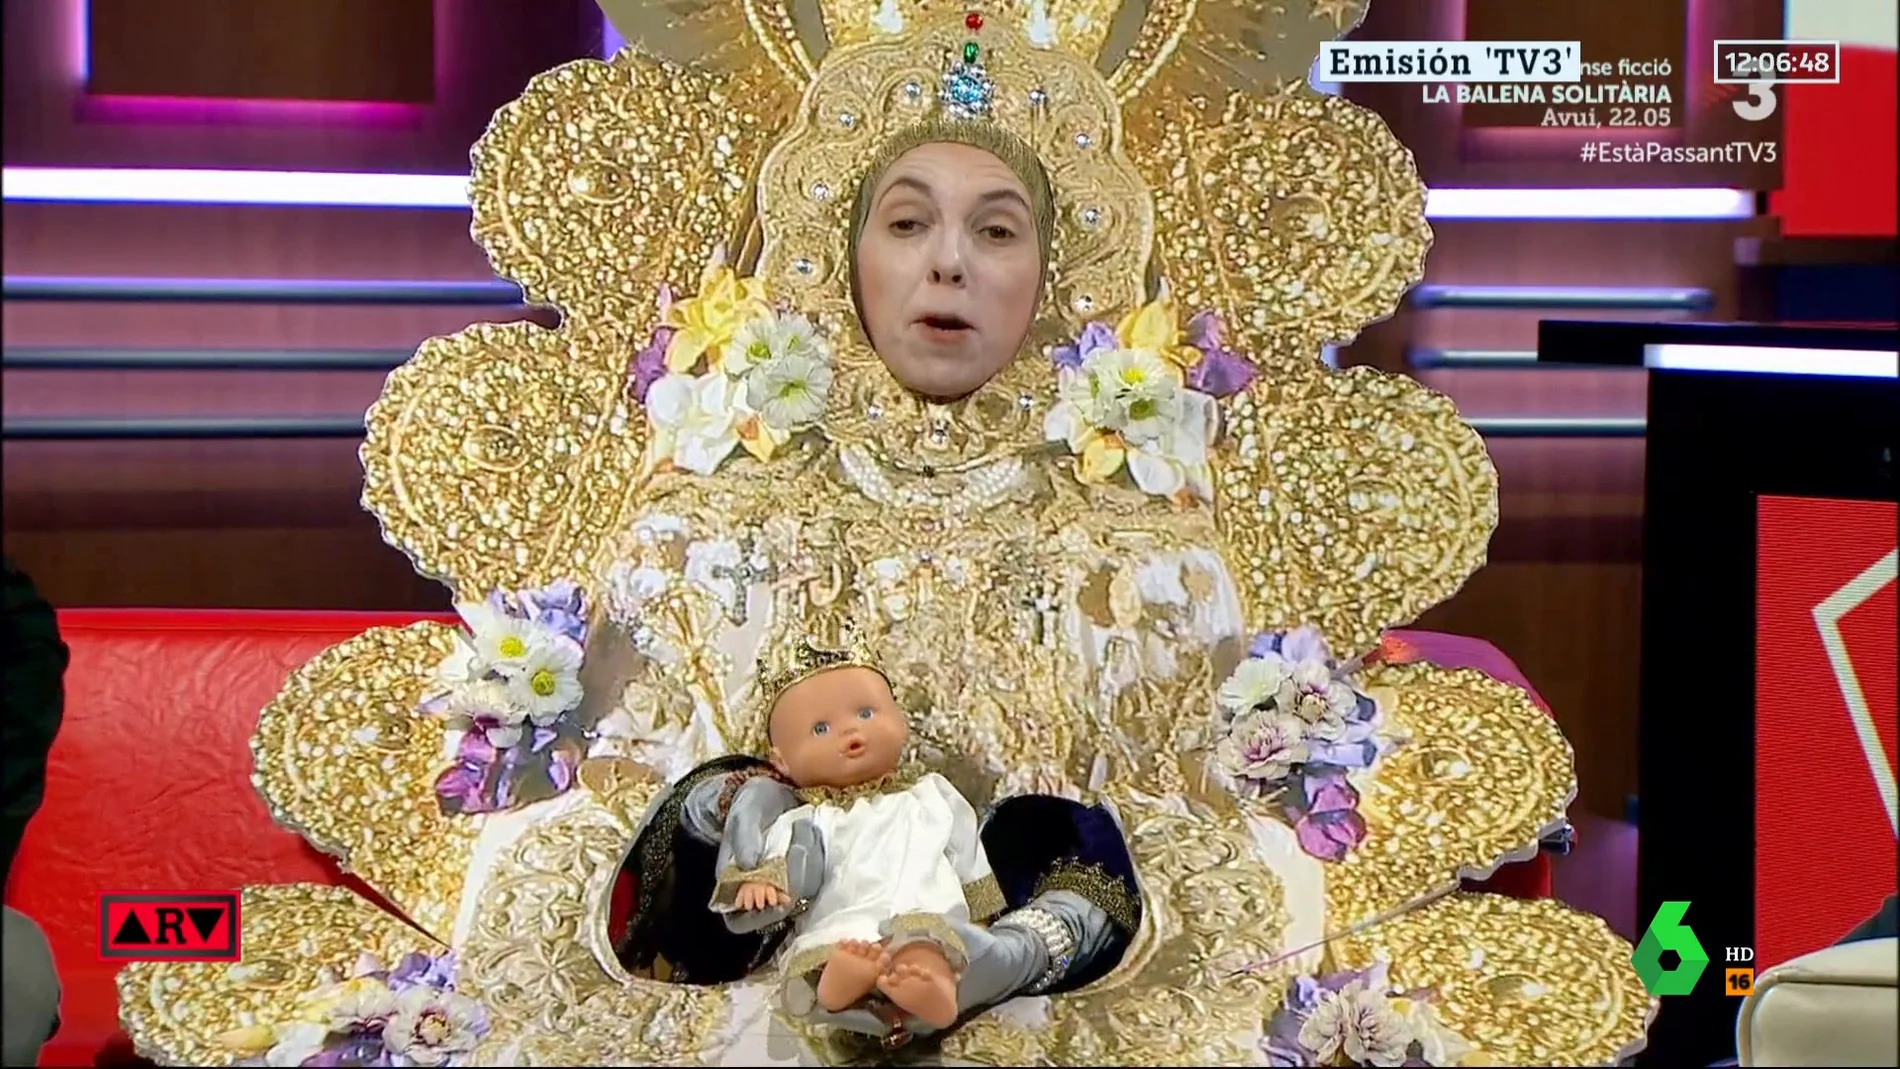 El acento andaluz y la vida sexual de la Virgen del Rocío: todas las  polémicas de la parodia de TV3